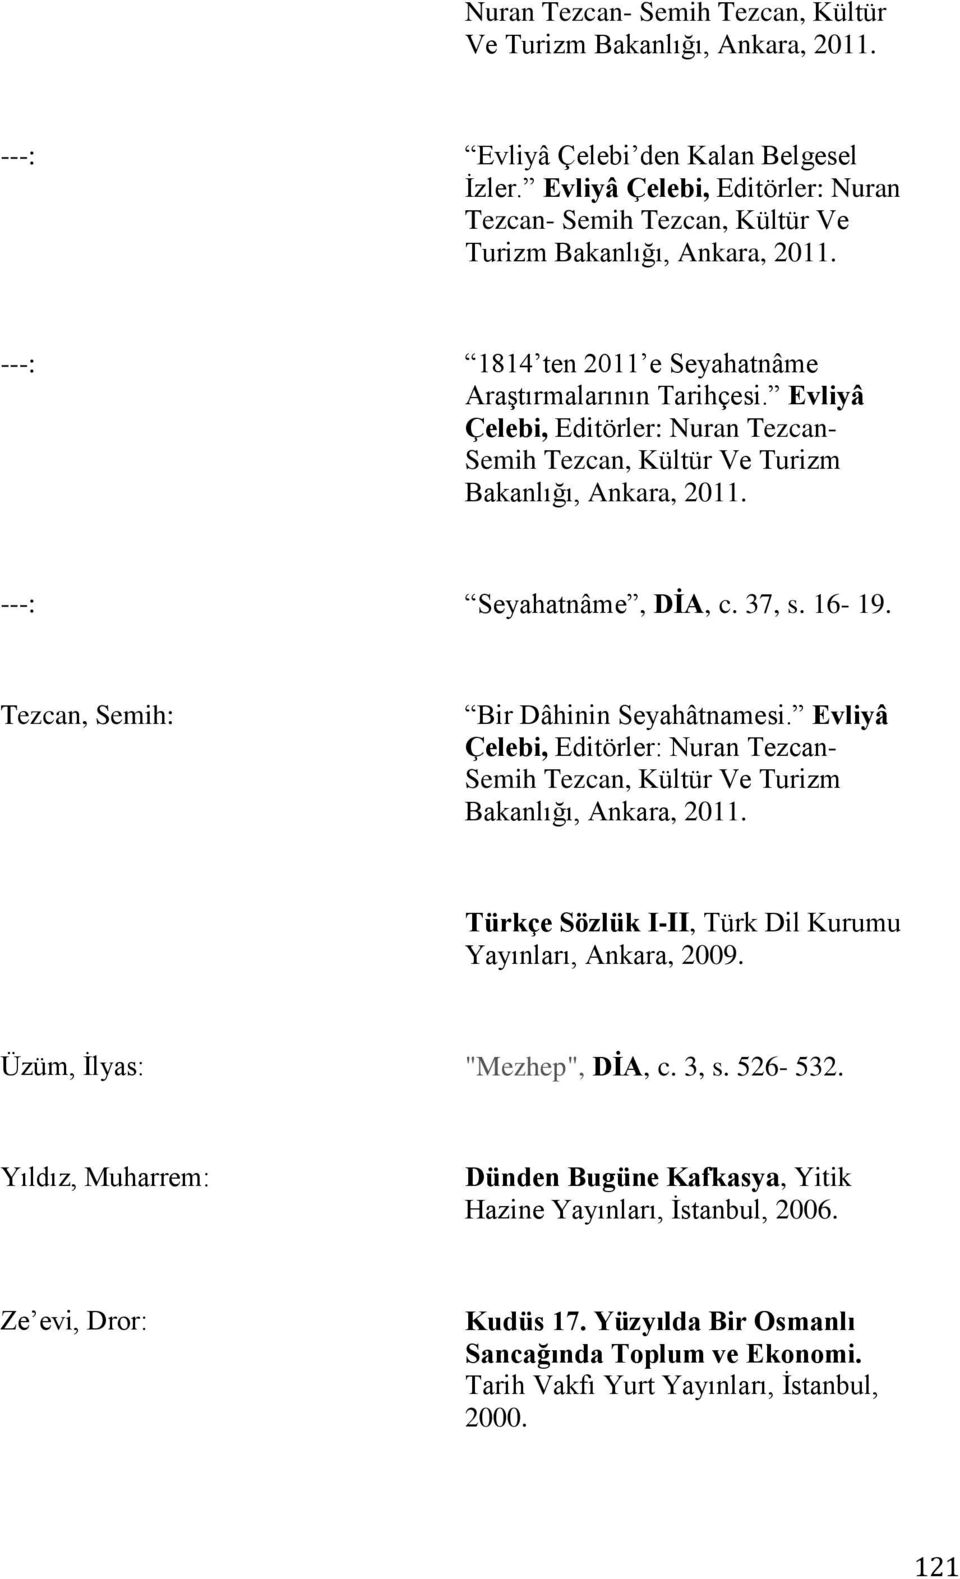 Evliyâ Çelebi, Editörler: Nuran Tezcan- Semih Tezcan, Kültür Ve Turizm Bakanlığı, Ankara, 2011. ---: Seyahatnâme, DİA, c. 37, s. 16-19. Tezcan, Semih: Bir Dâhinin Seyahâtnamesi.